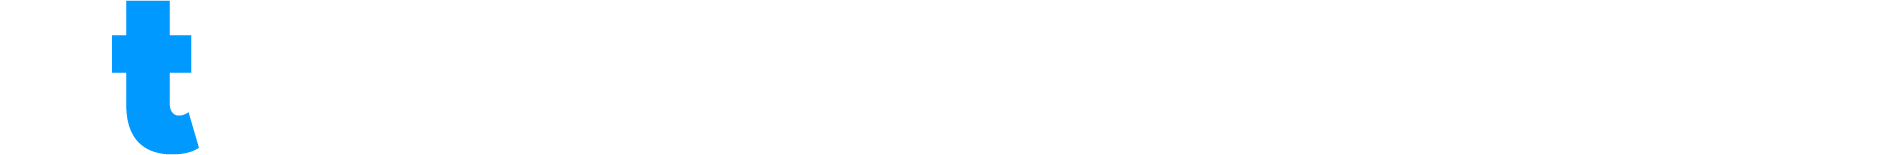 dt-logo-2.0-2b-RGB